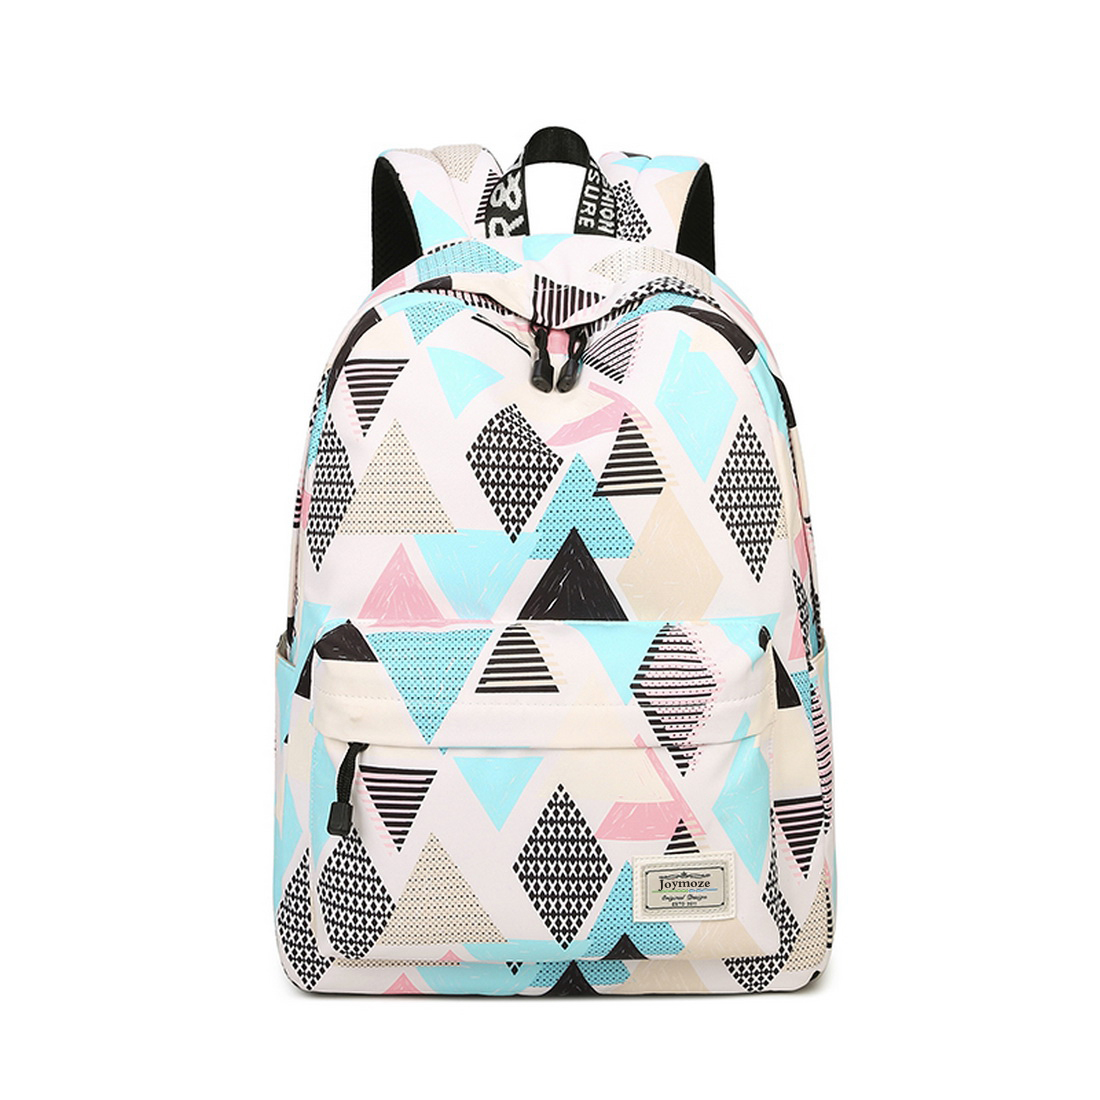 Joymoze Waterproof School Backpack for Girls Middle School Cute Bookbag Daypack for Women Rhombus 843